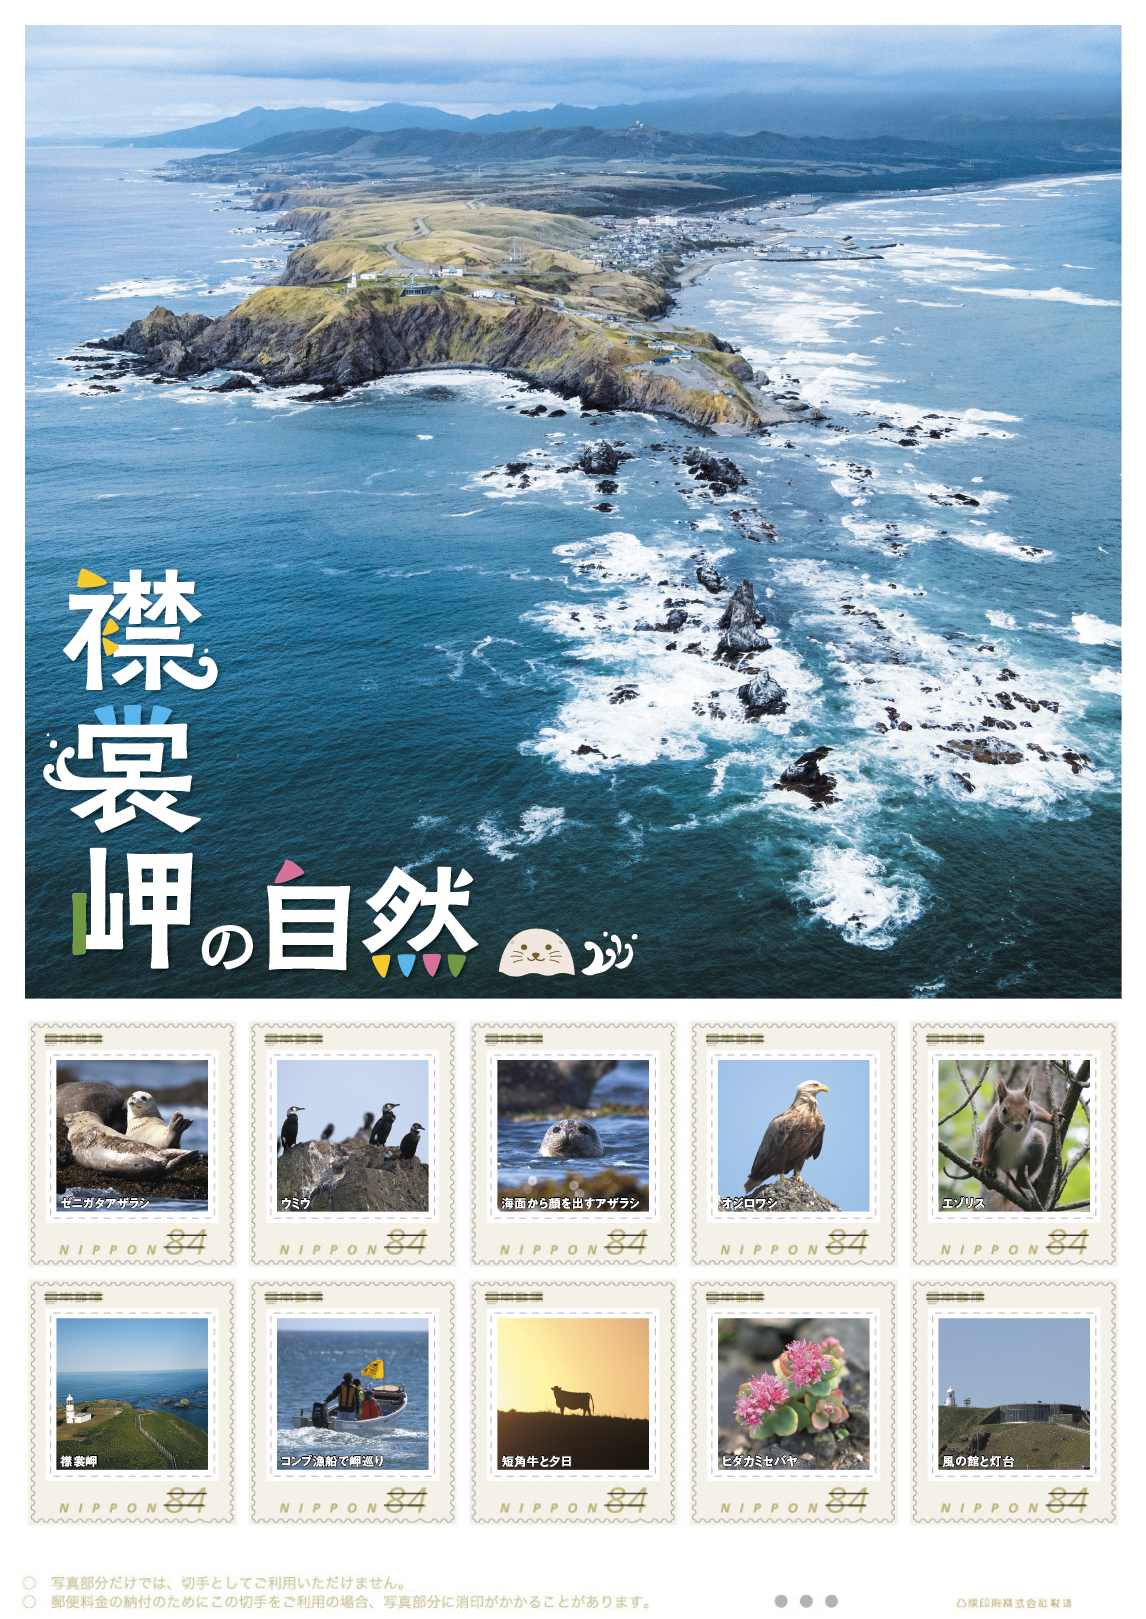 オリジナル フレーム切手「襟裳岬の自然」の販売開始と贈呈式の開催